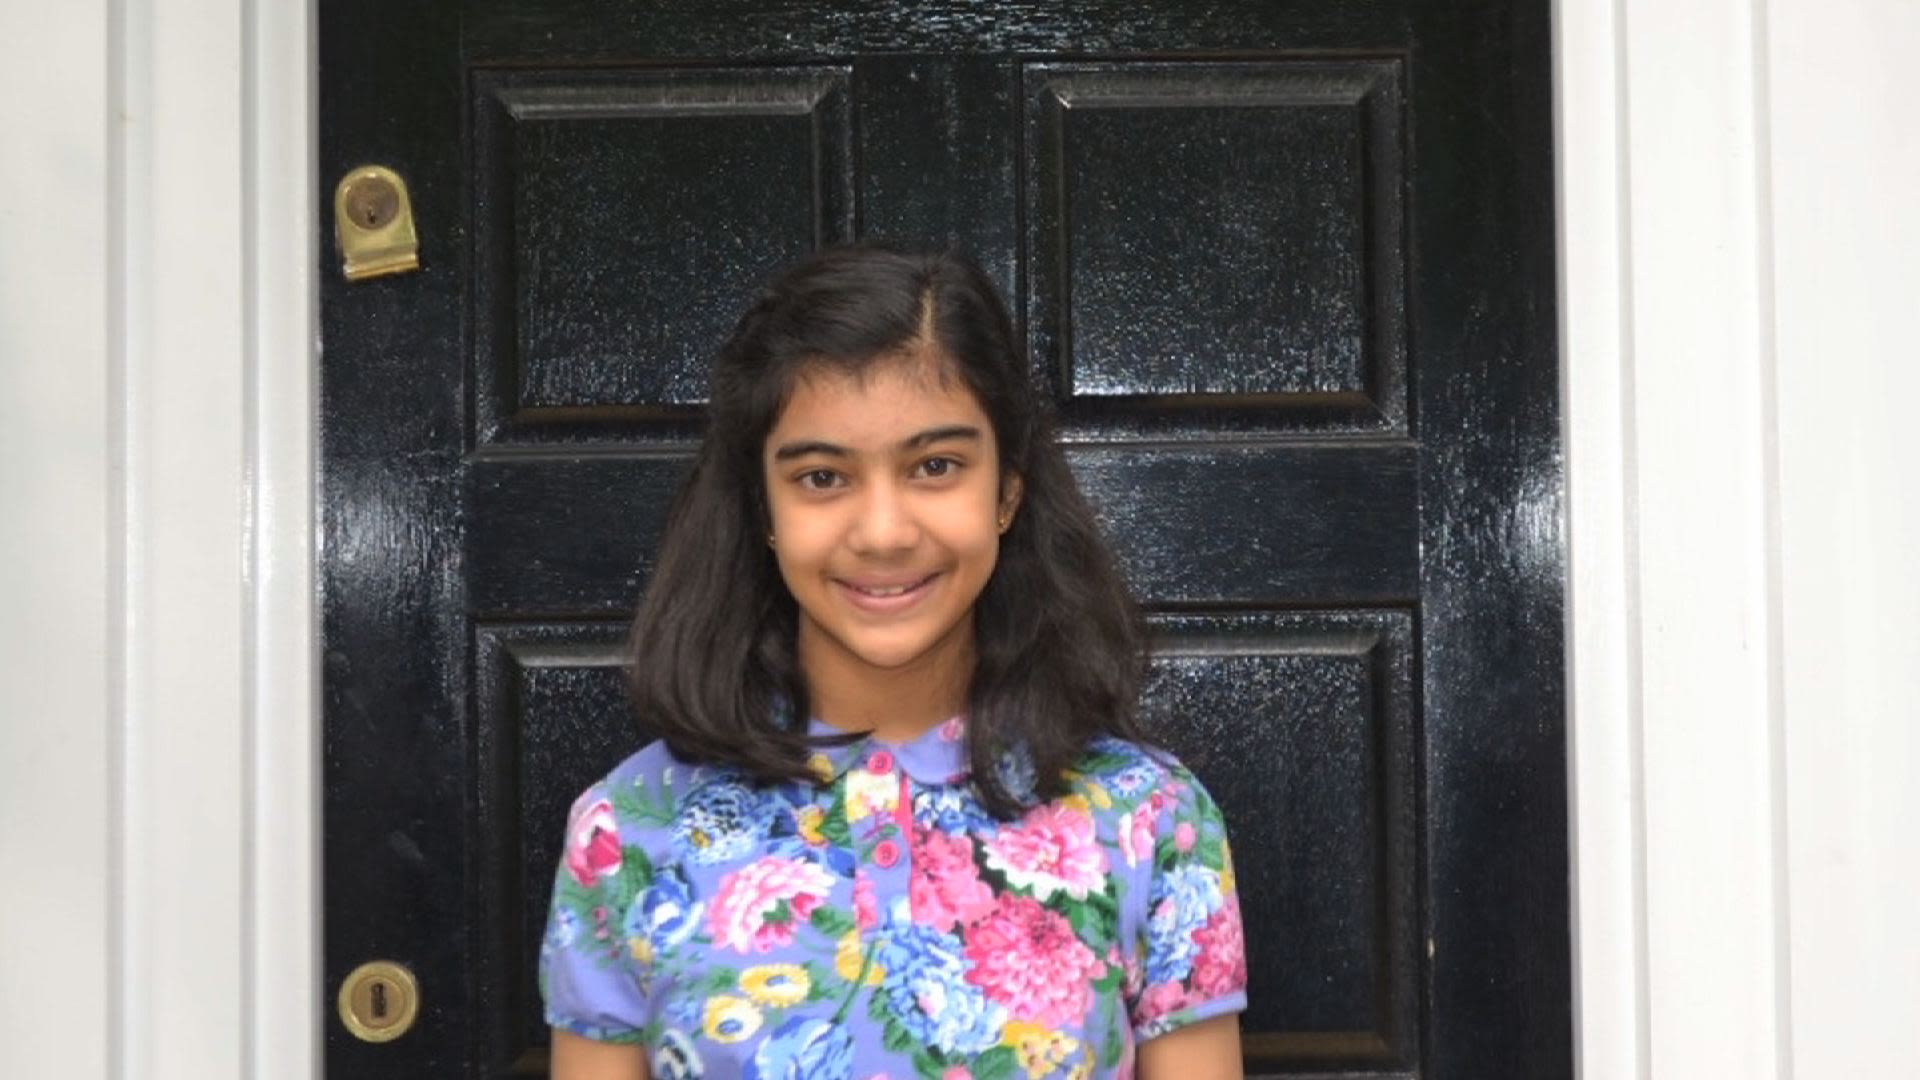 Indean Beautiful Garlixxx Video - British 12-year-old smarter than Einstein, Hawking | CNN